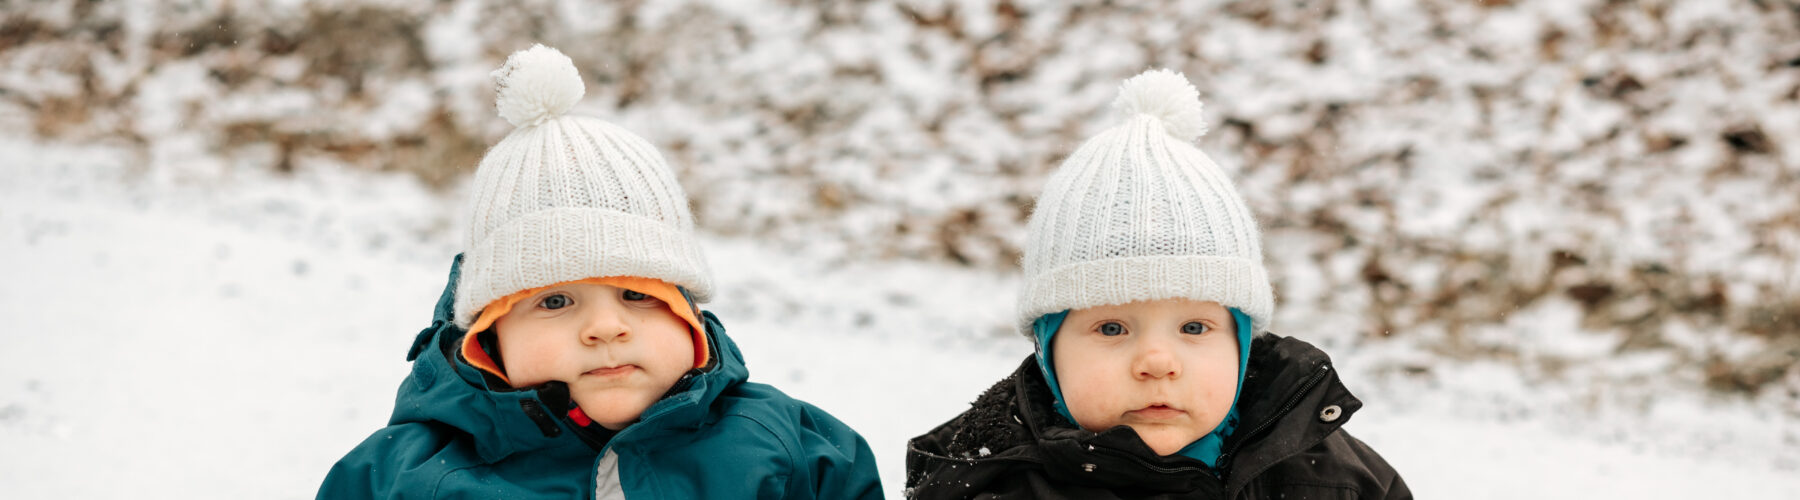 kaksoset, taaperot, istuvat talvihaalareissa lumessa